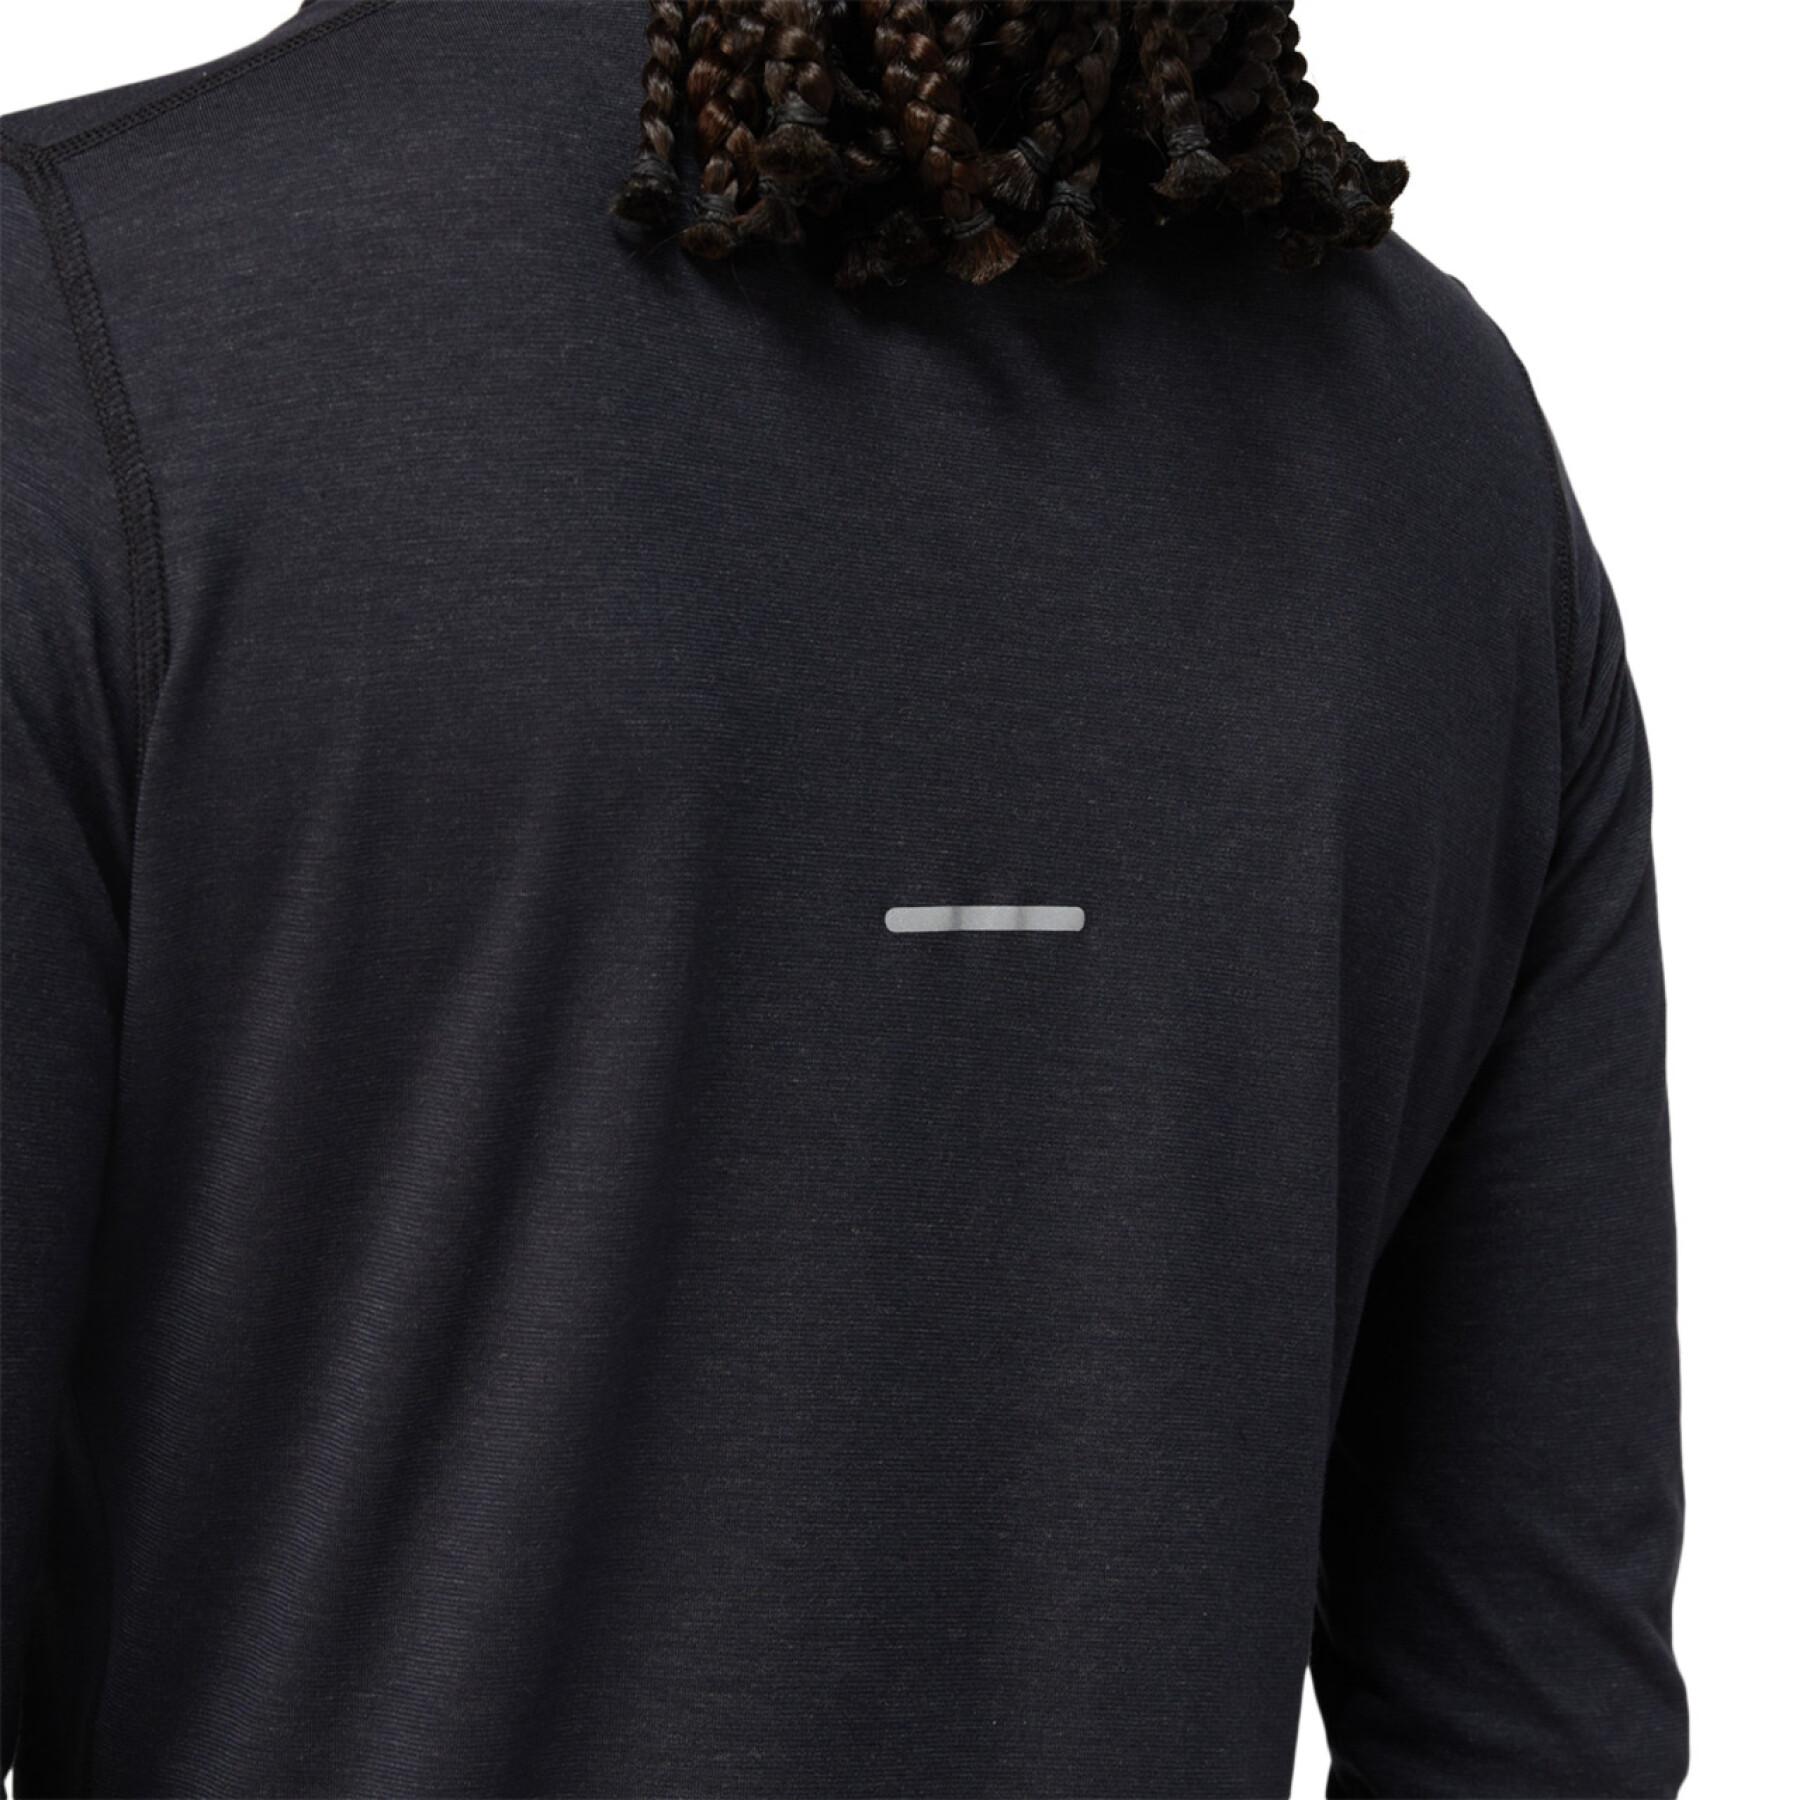 Camiseta de manga larga Asics Wool Rib para mujer